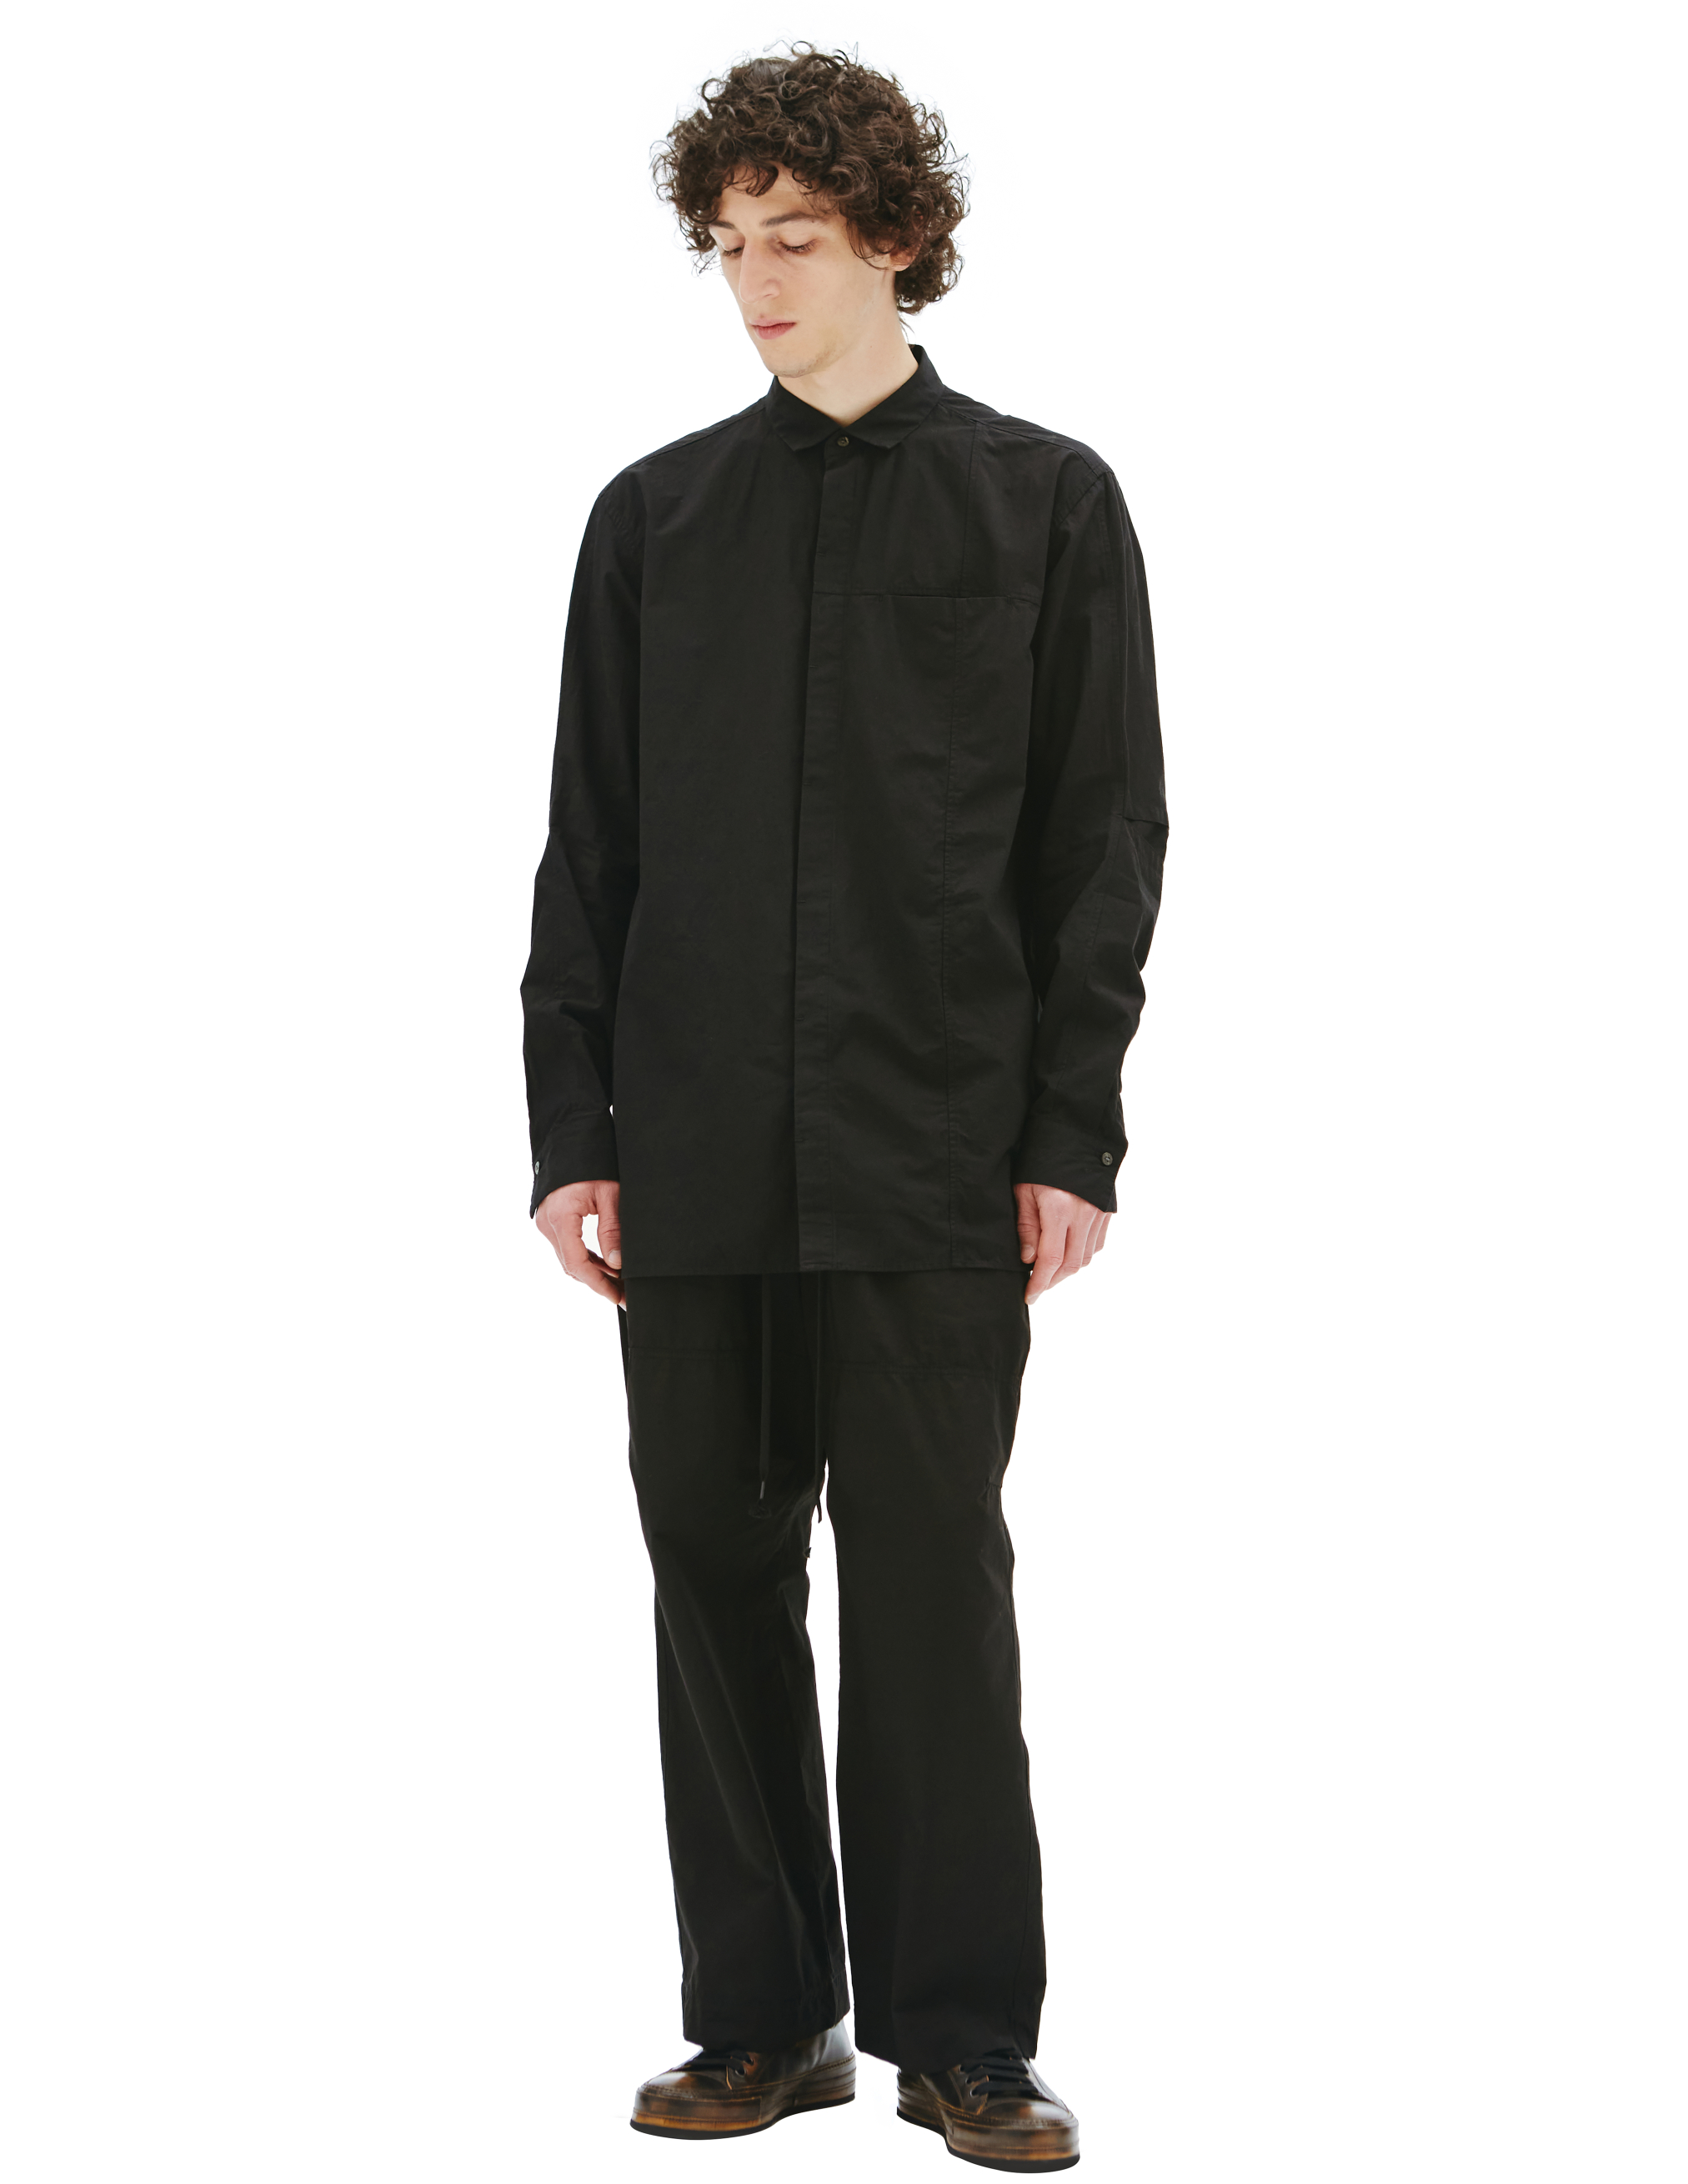 Черная рубашка со скрытым карманом The Viridi-Anne VI/3492/02, размер 4 VI/3492/02 - фото 1